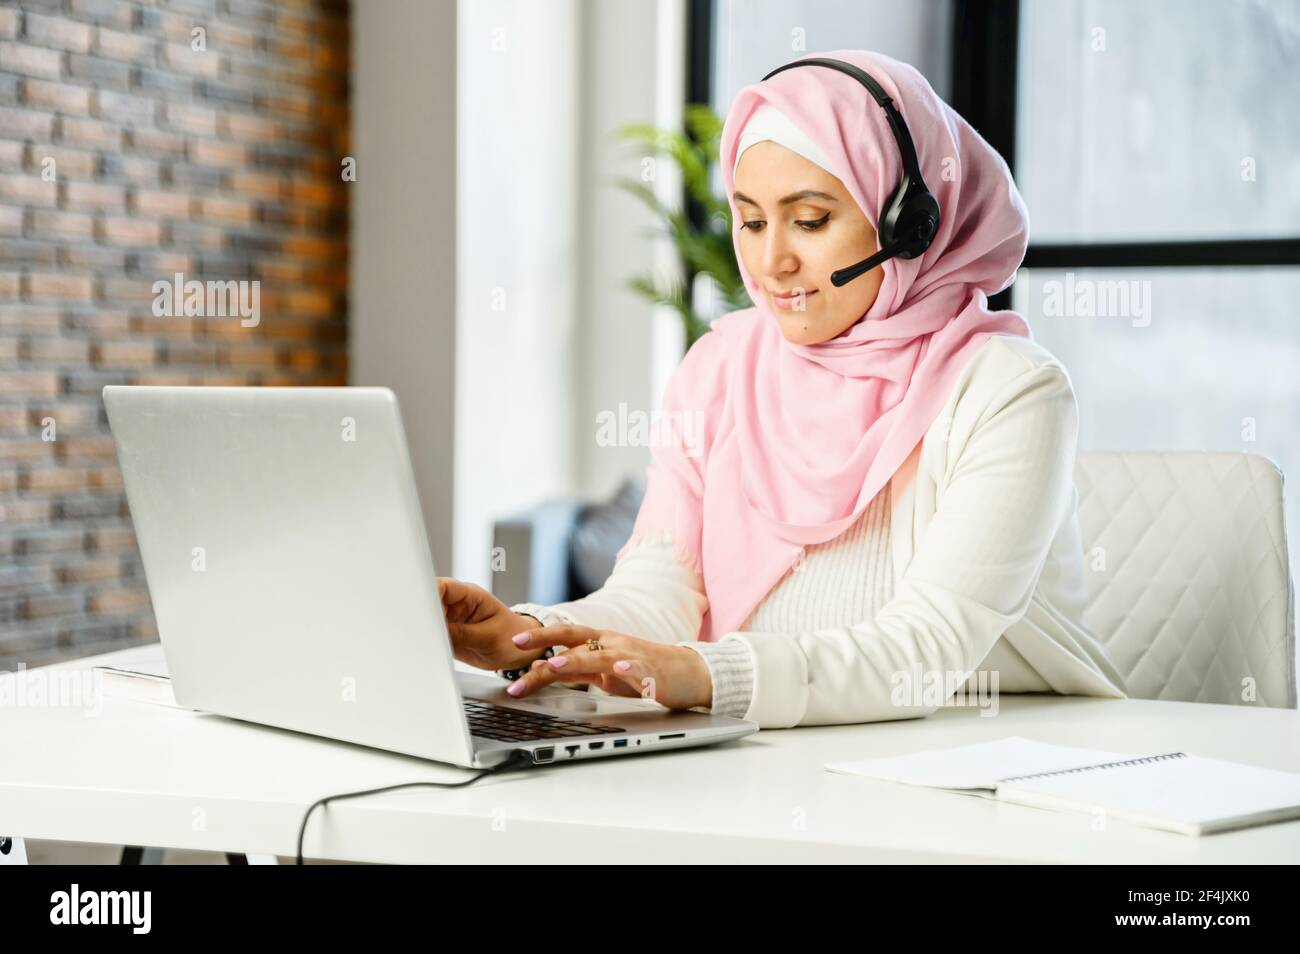 Giovane musulmano arabo misto-razza rappresentante del servizio clienti femminile in hijab e cuffie seduta alla scrivania in ufficio, digitando e-mail sul portatile, cercando o navigando in internet, rispondendo al cliente Foto Stock